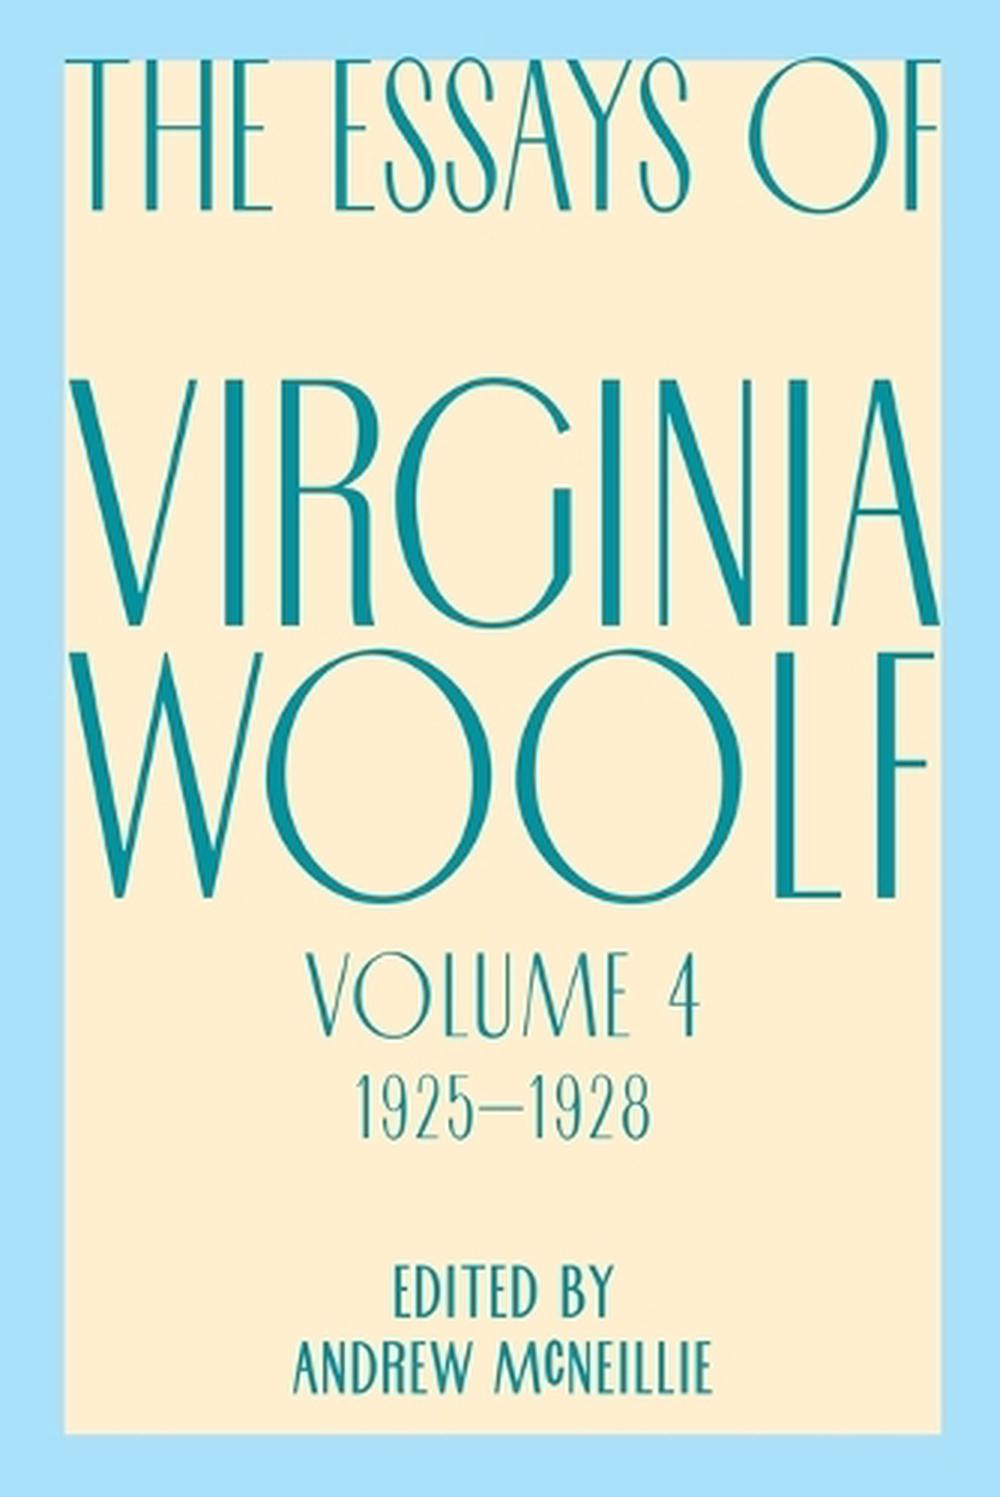 virginia woolf essay 1929 crossword clue